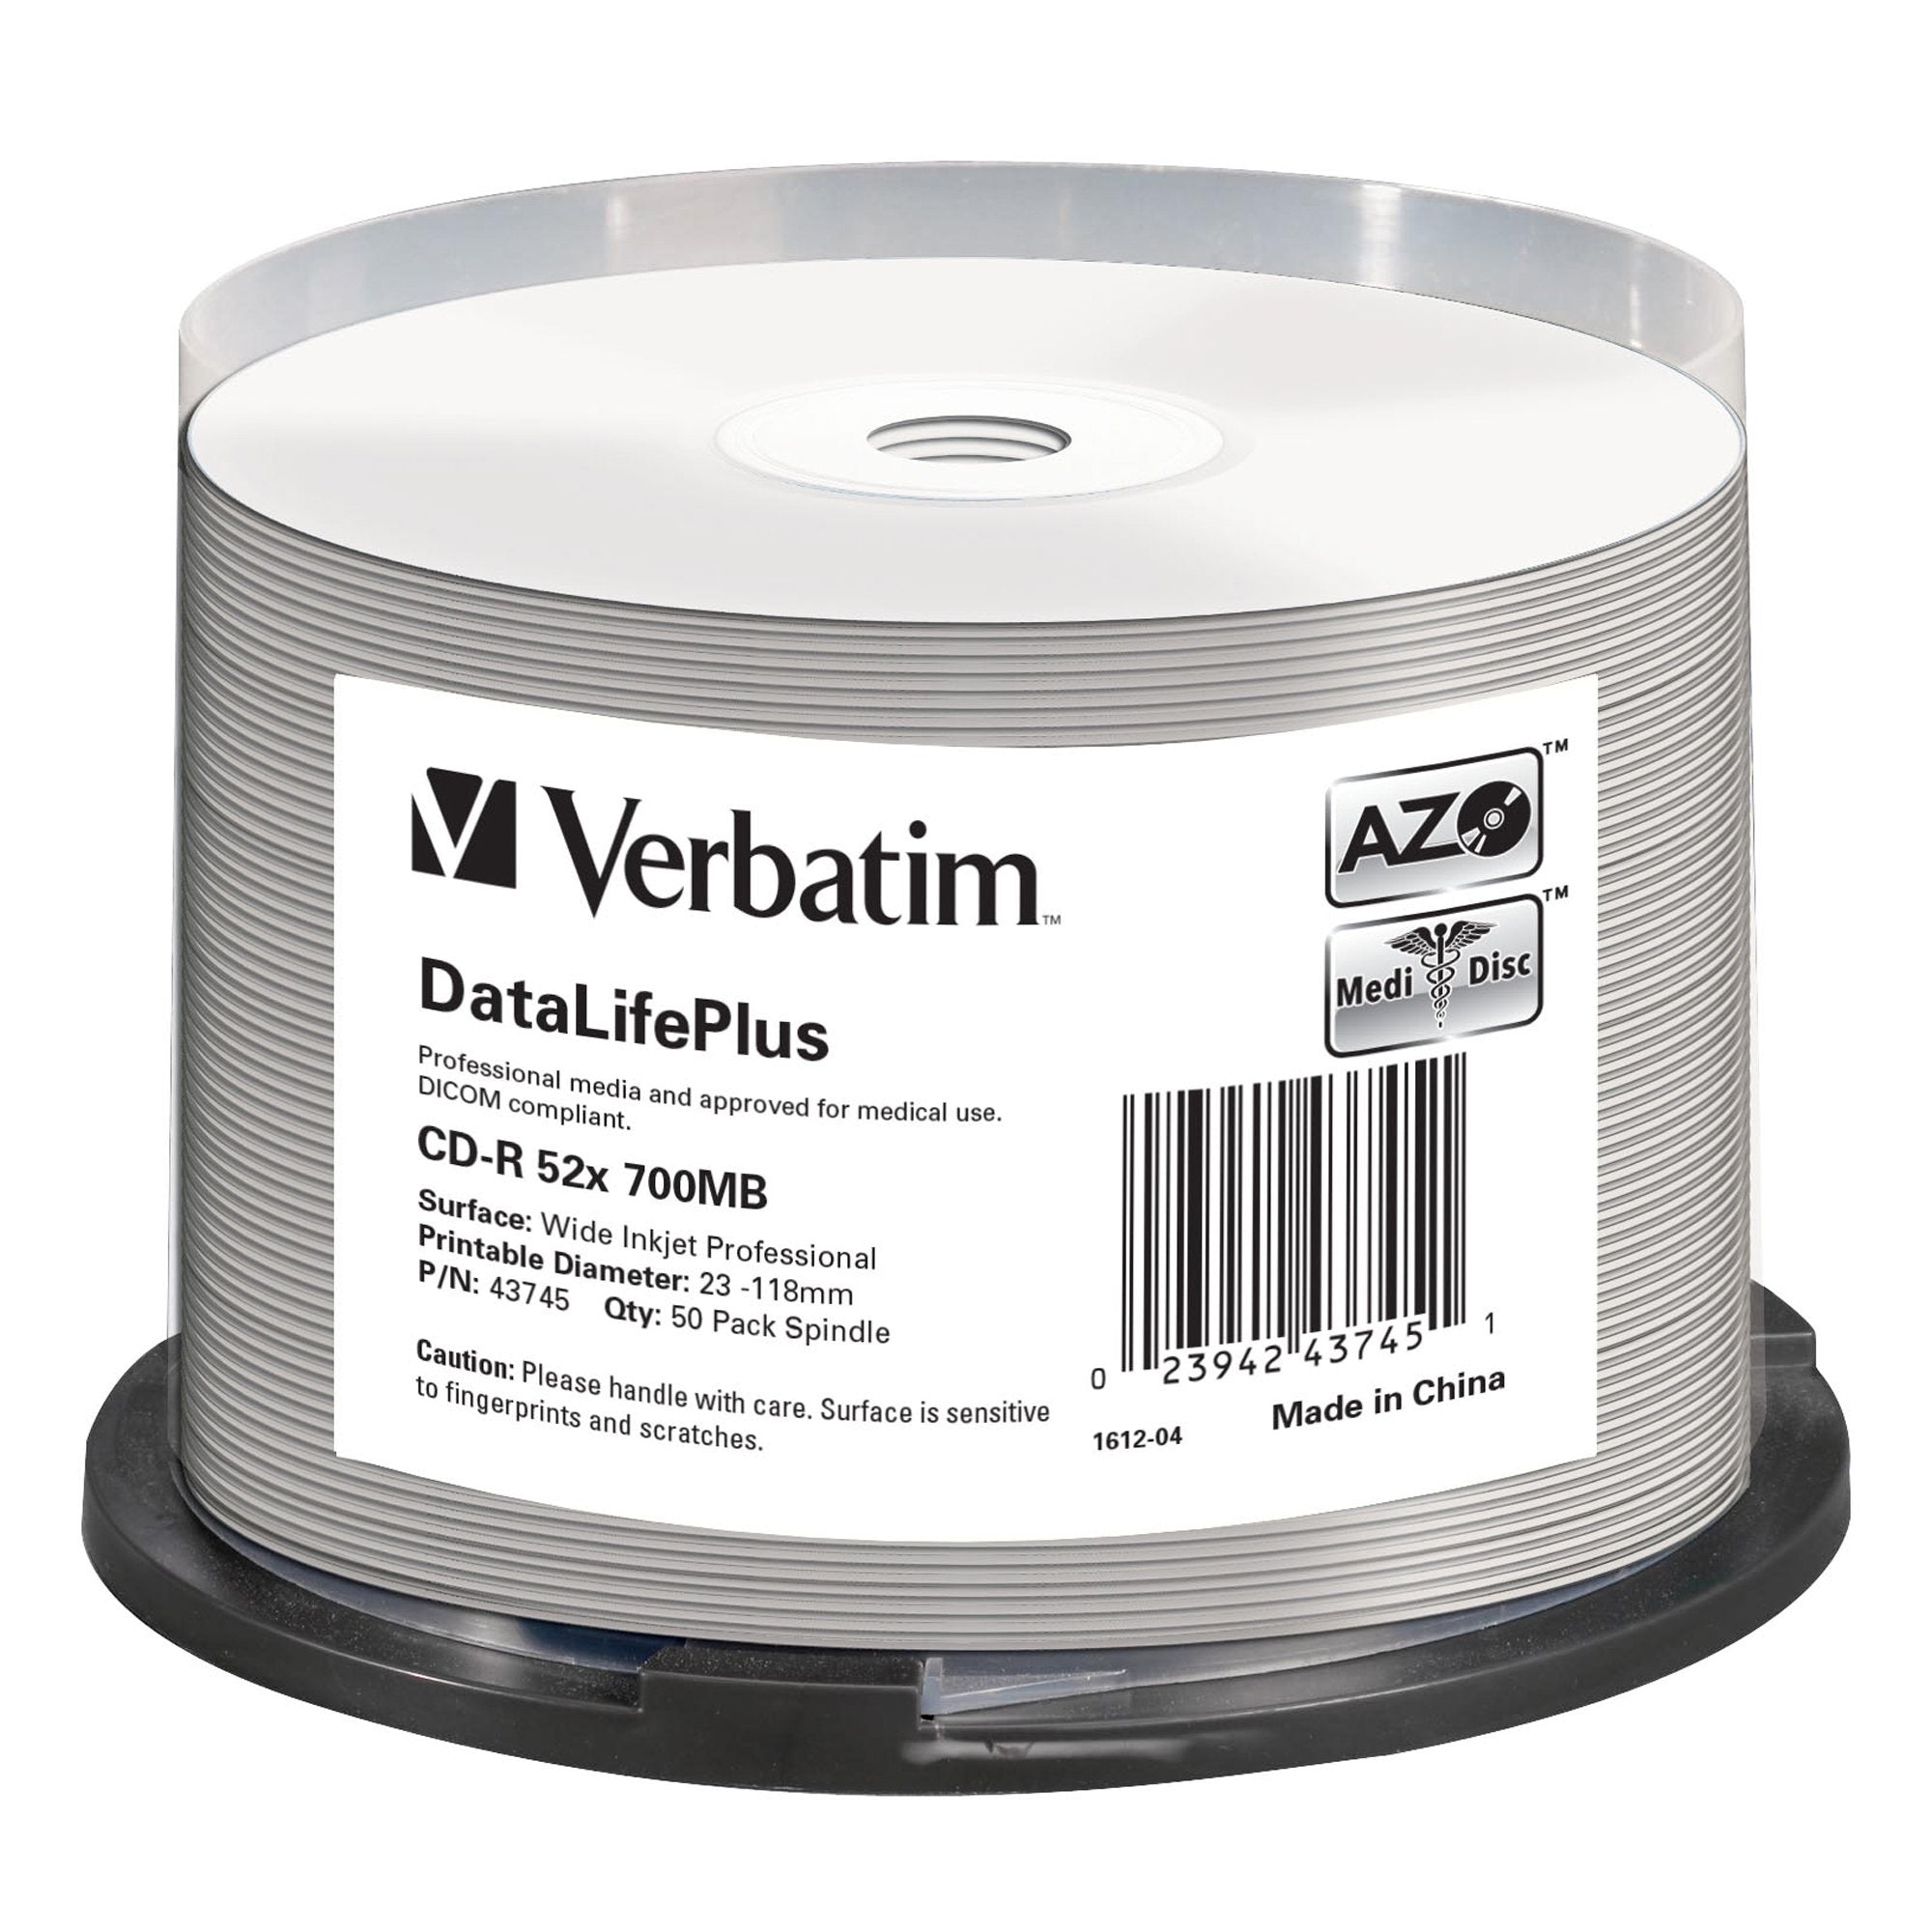 verbatim-scatola-50-cd-r-bulk-datalifeplus-spind-1x-52x-700mb-stamp-wide-inkjet-photo